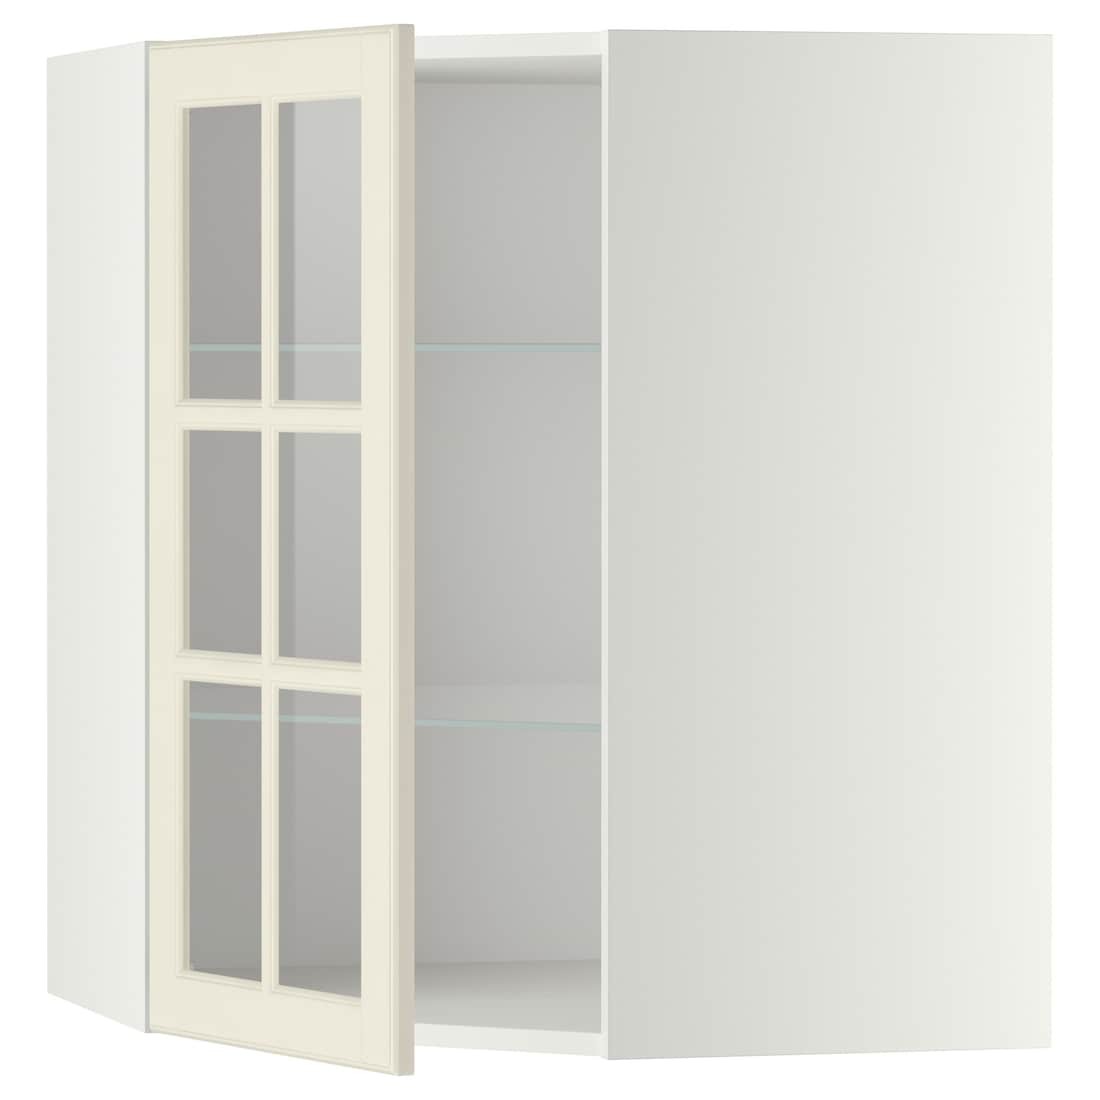 METOD МЕТОД Кутова настінна шафа з полицями / скляні двері, білий / Bodbyn кремовий, 68x80 см